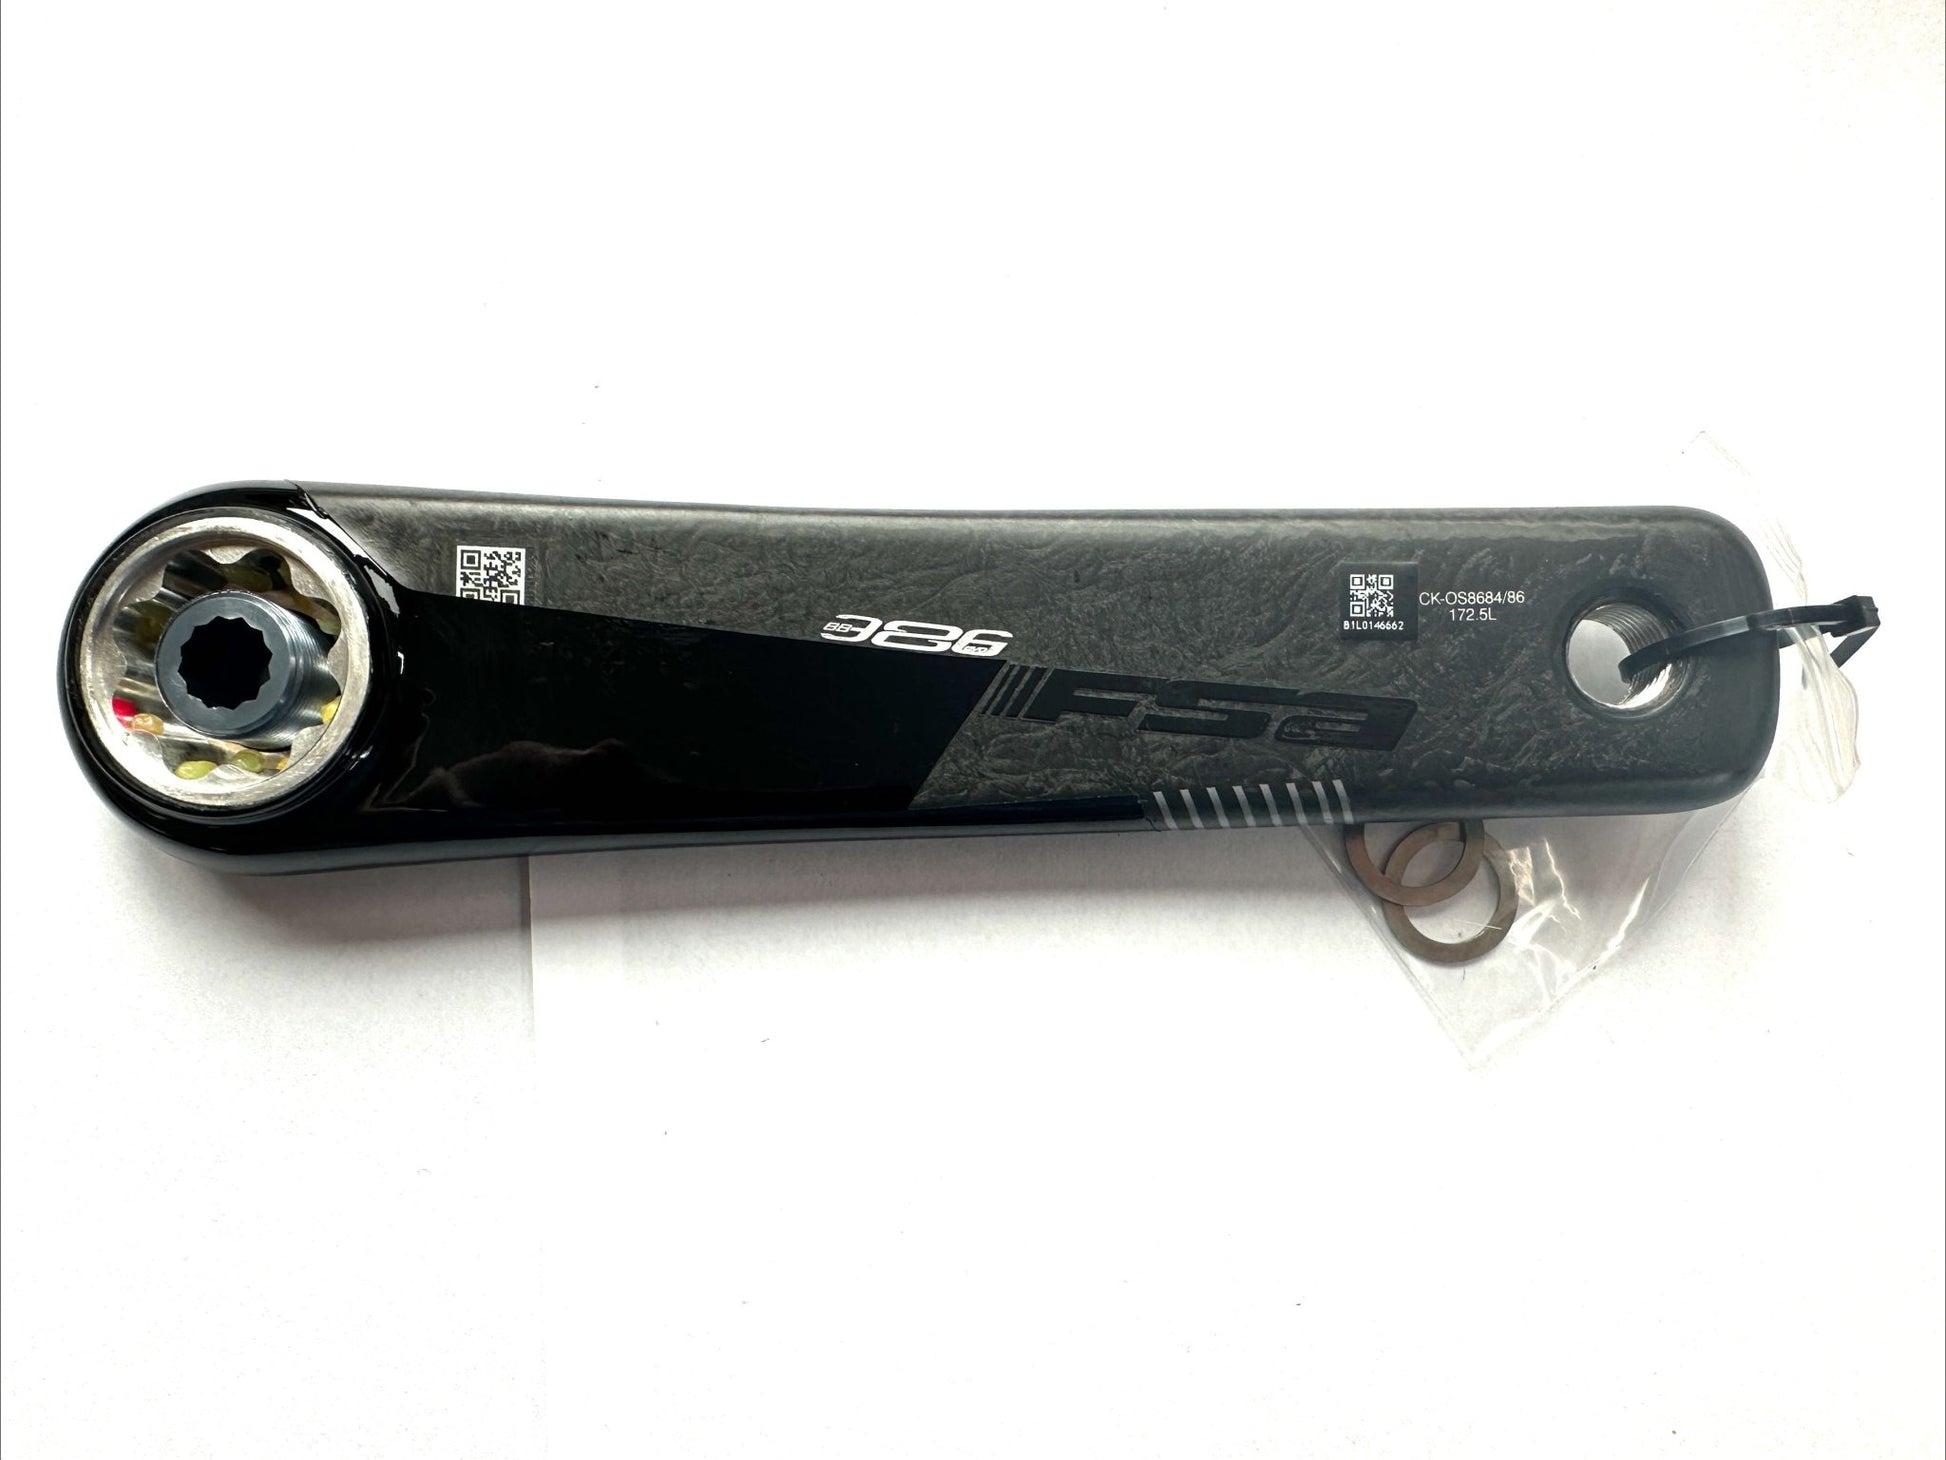 FSA SL-K BB386EVO Carbon Crankset Speed: 11, 30mm, BCD: 110, 36/52, 172.5mm NEW - Random Bike Parts